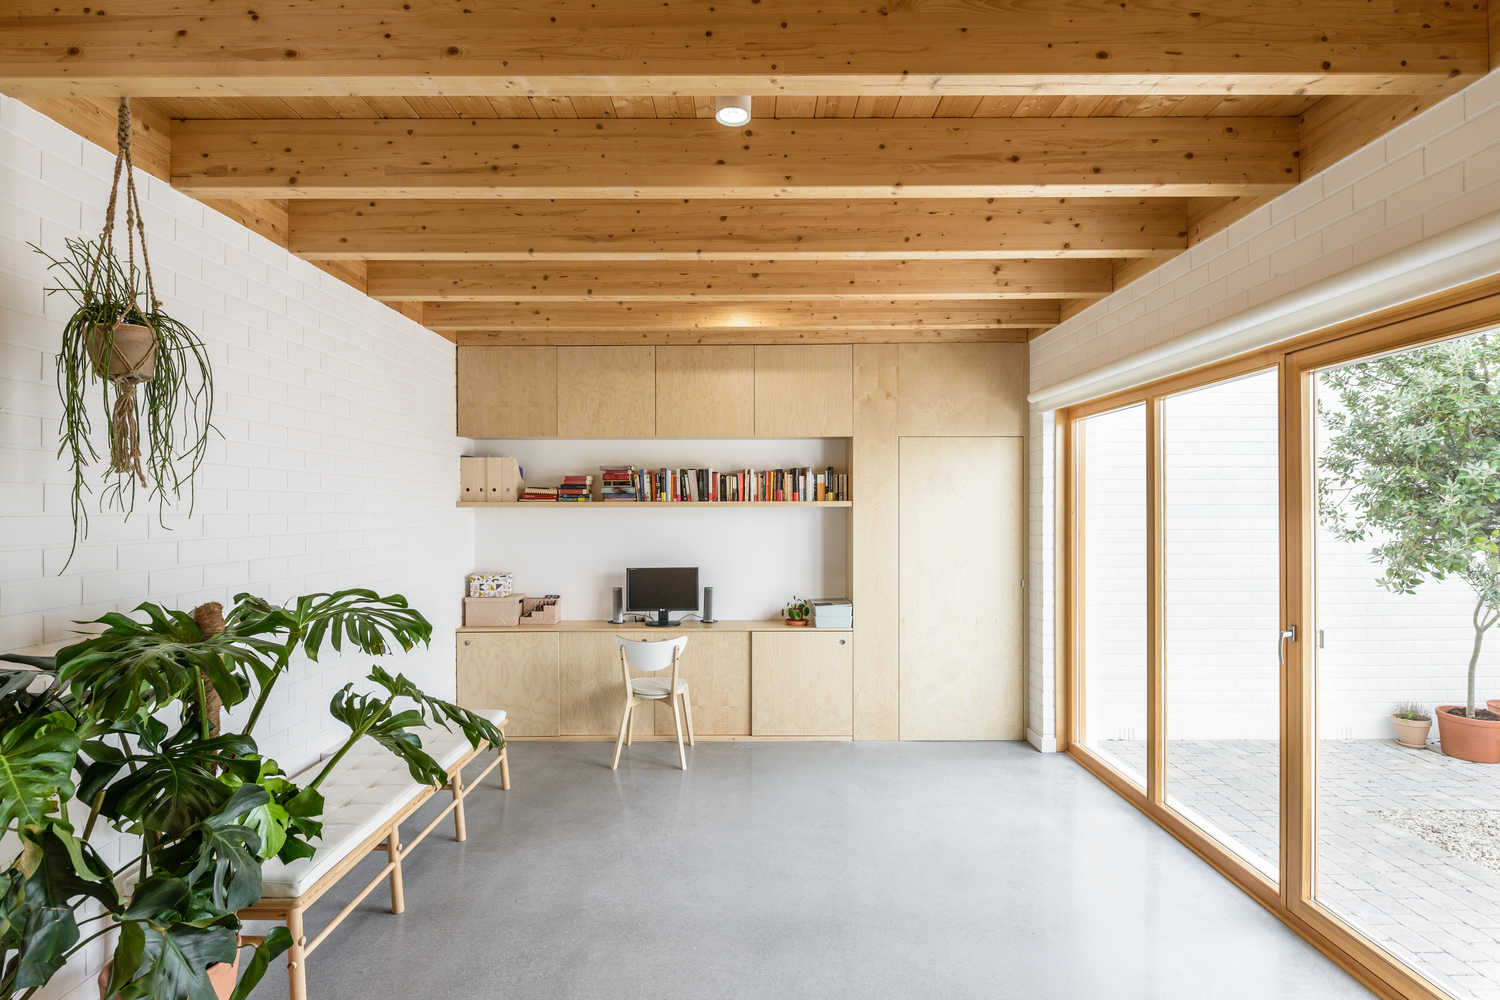 Nội thất Nhật - tối giản kết hợp hài hòa trong nhà 2 tầng ở Tây Ban Nha